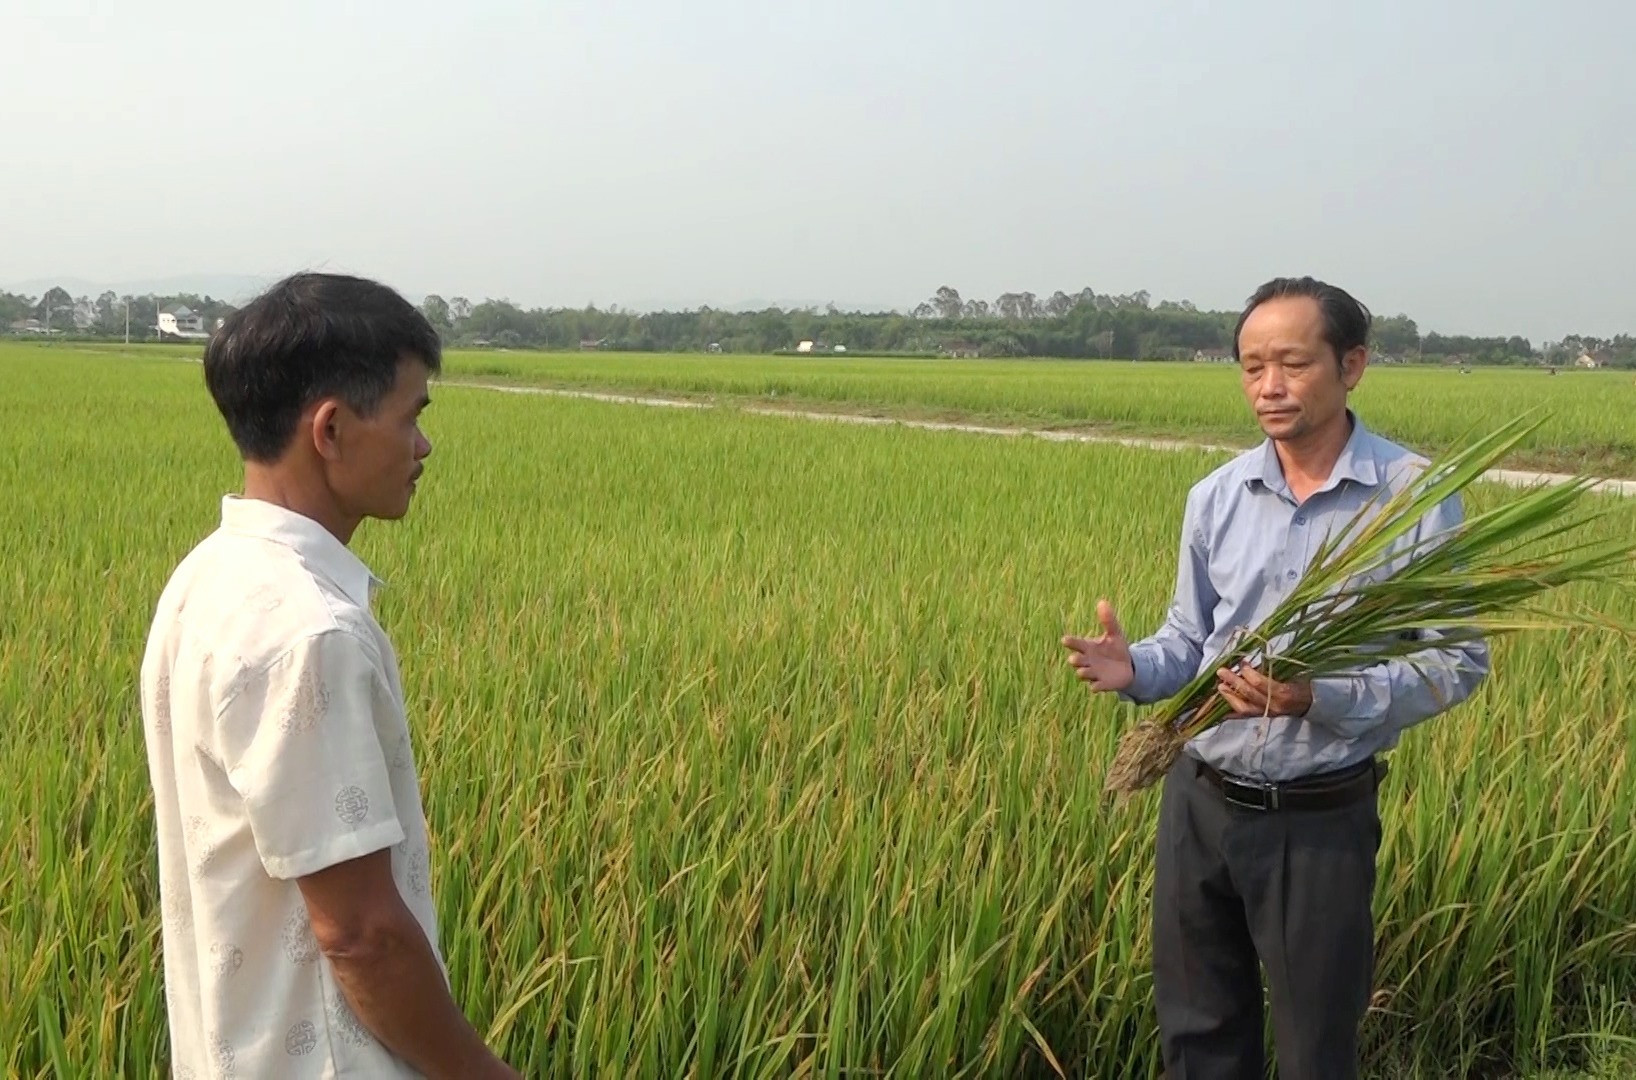 Cán bộ kỹ thuật Trung tâm Kỹ thuật Nông nghiệp huyện Thăng Bình hướng dẫn người dân nhận biết các loại sâu bệnh gây hại lúa.